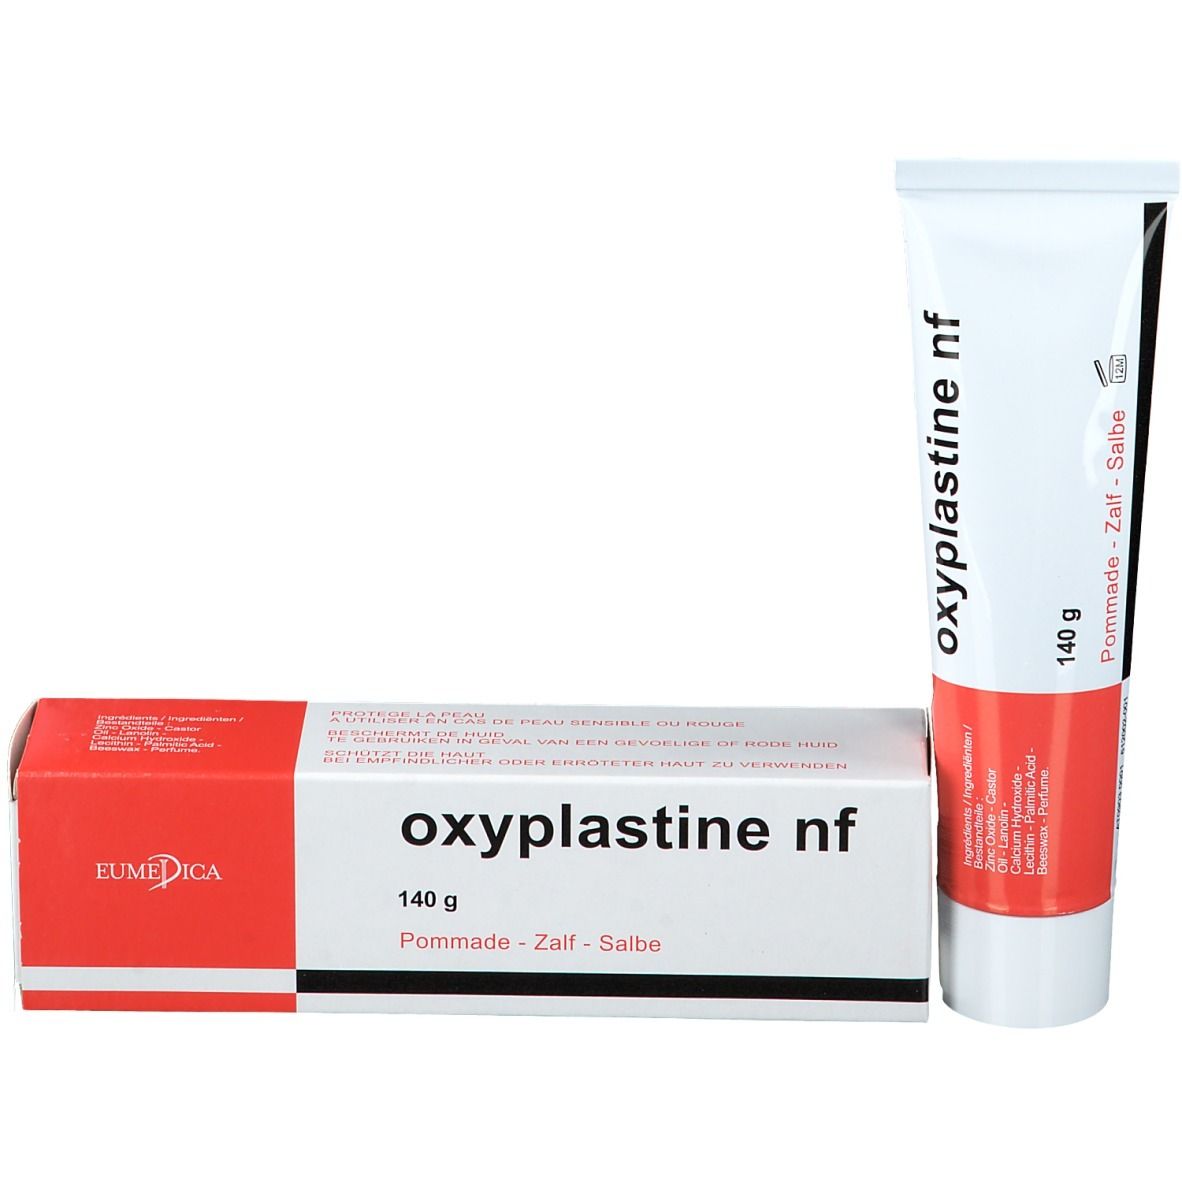 Oxyplastine nf